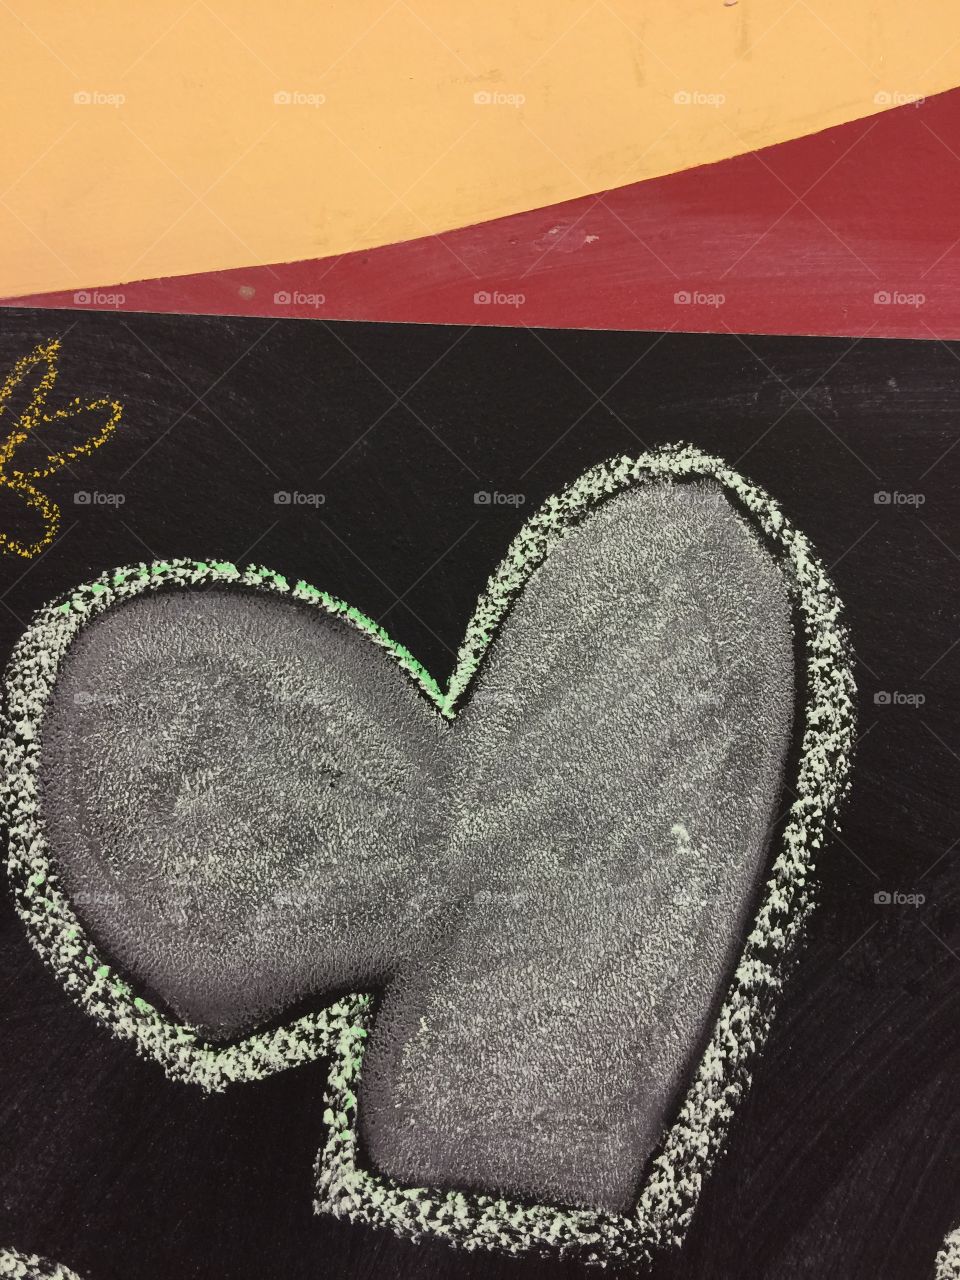 Heart
Valentine
Chalk board